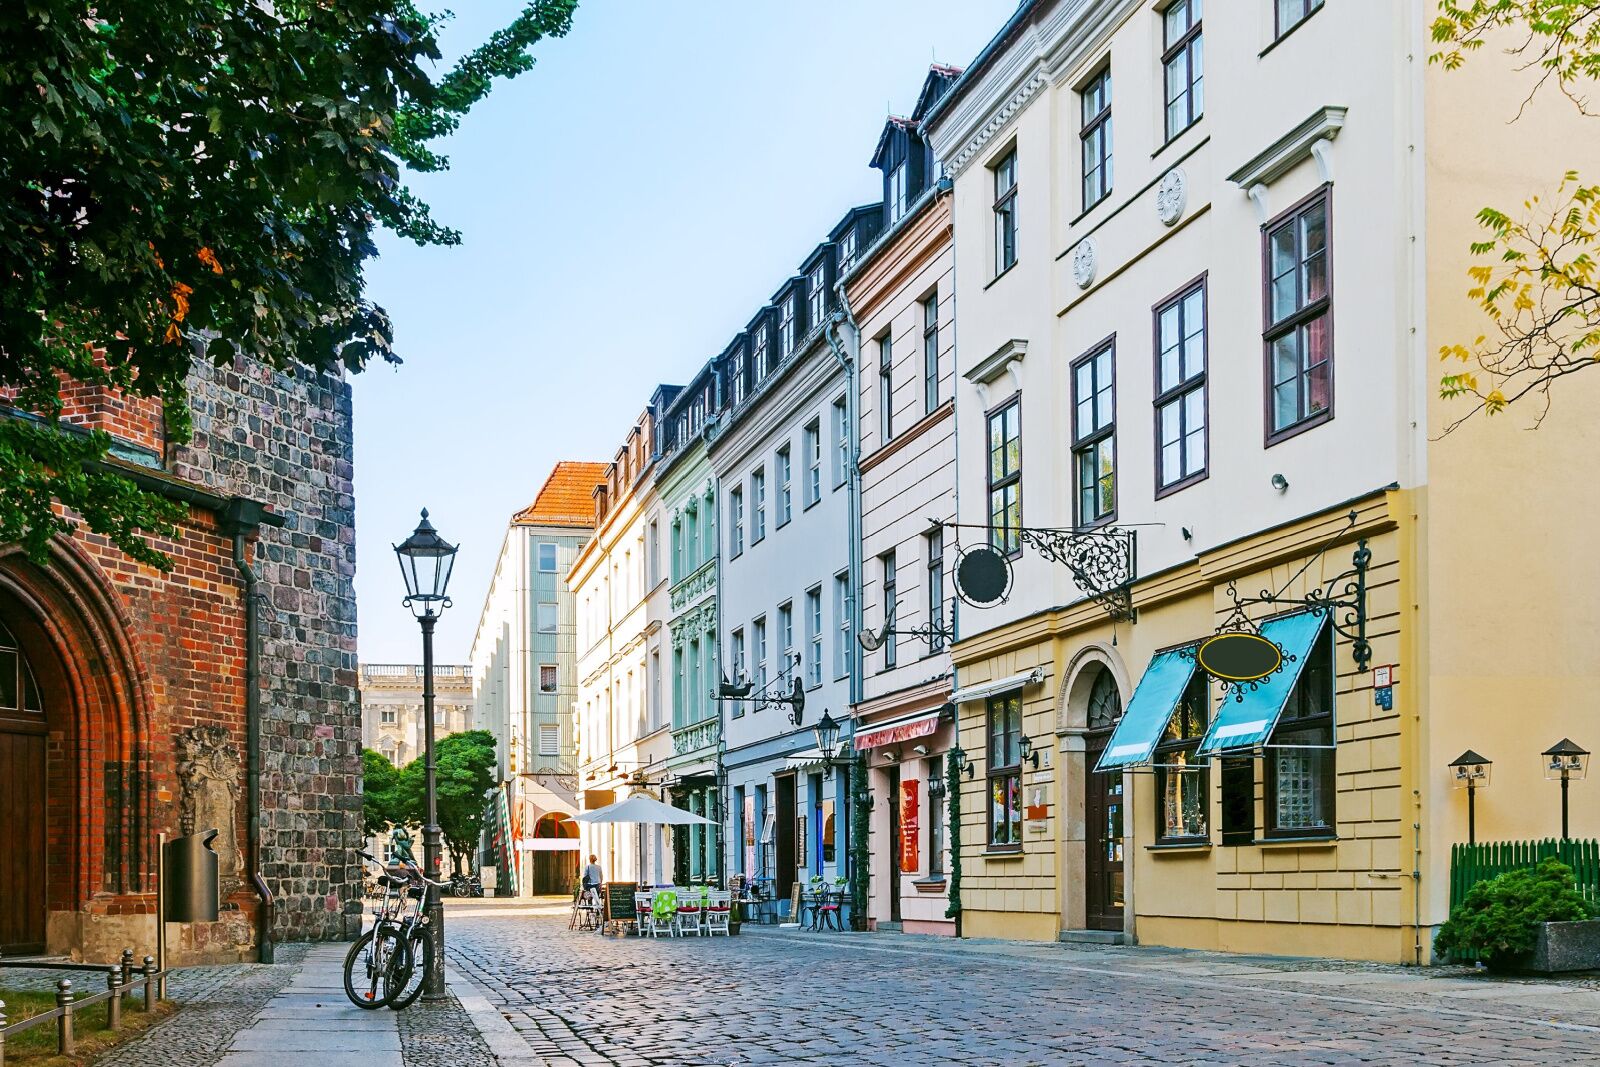 museums in berlin - cute street